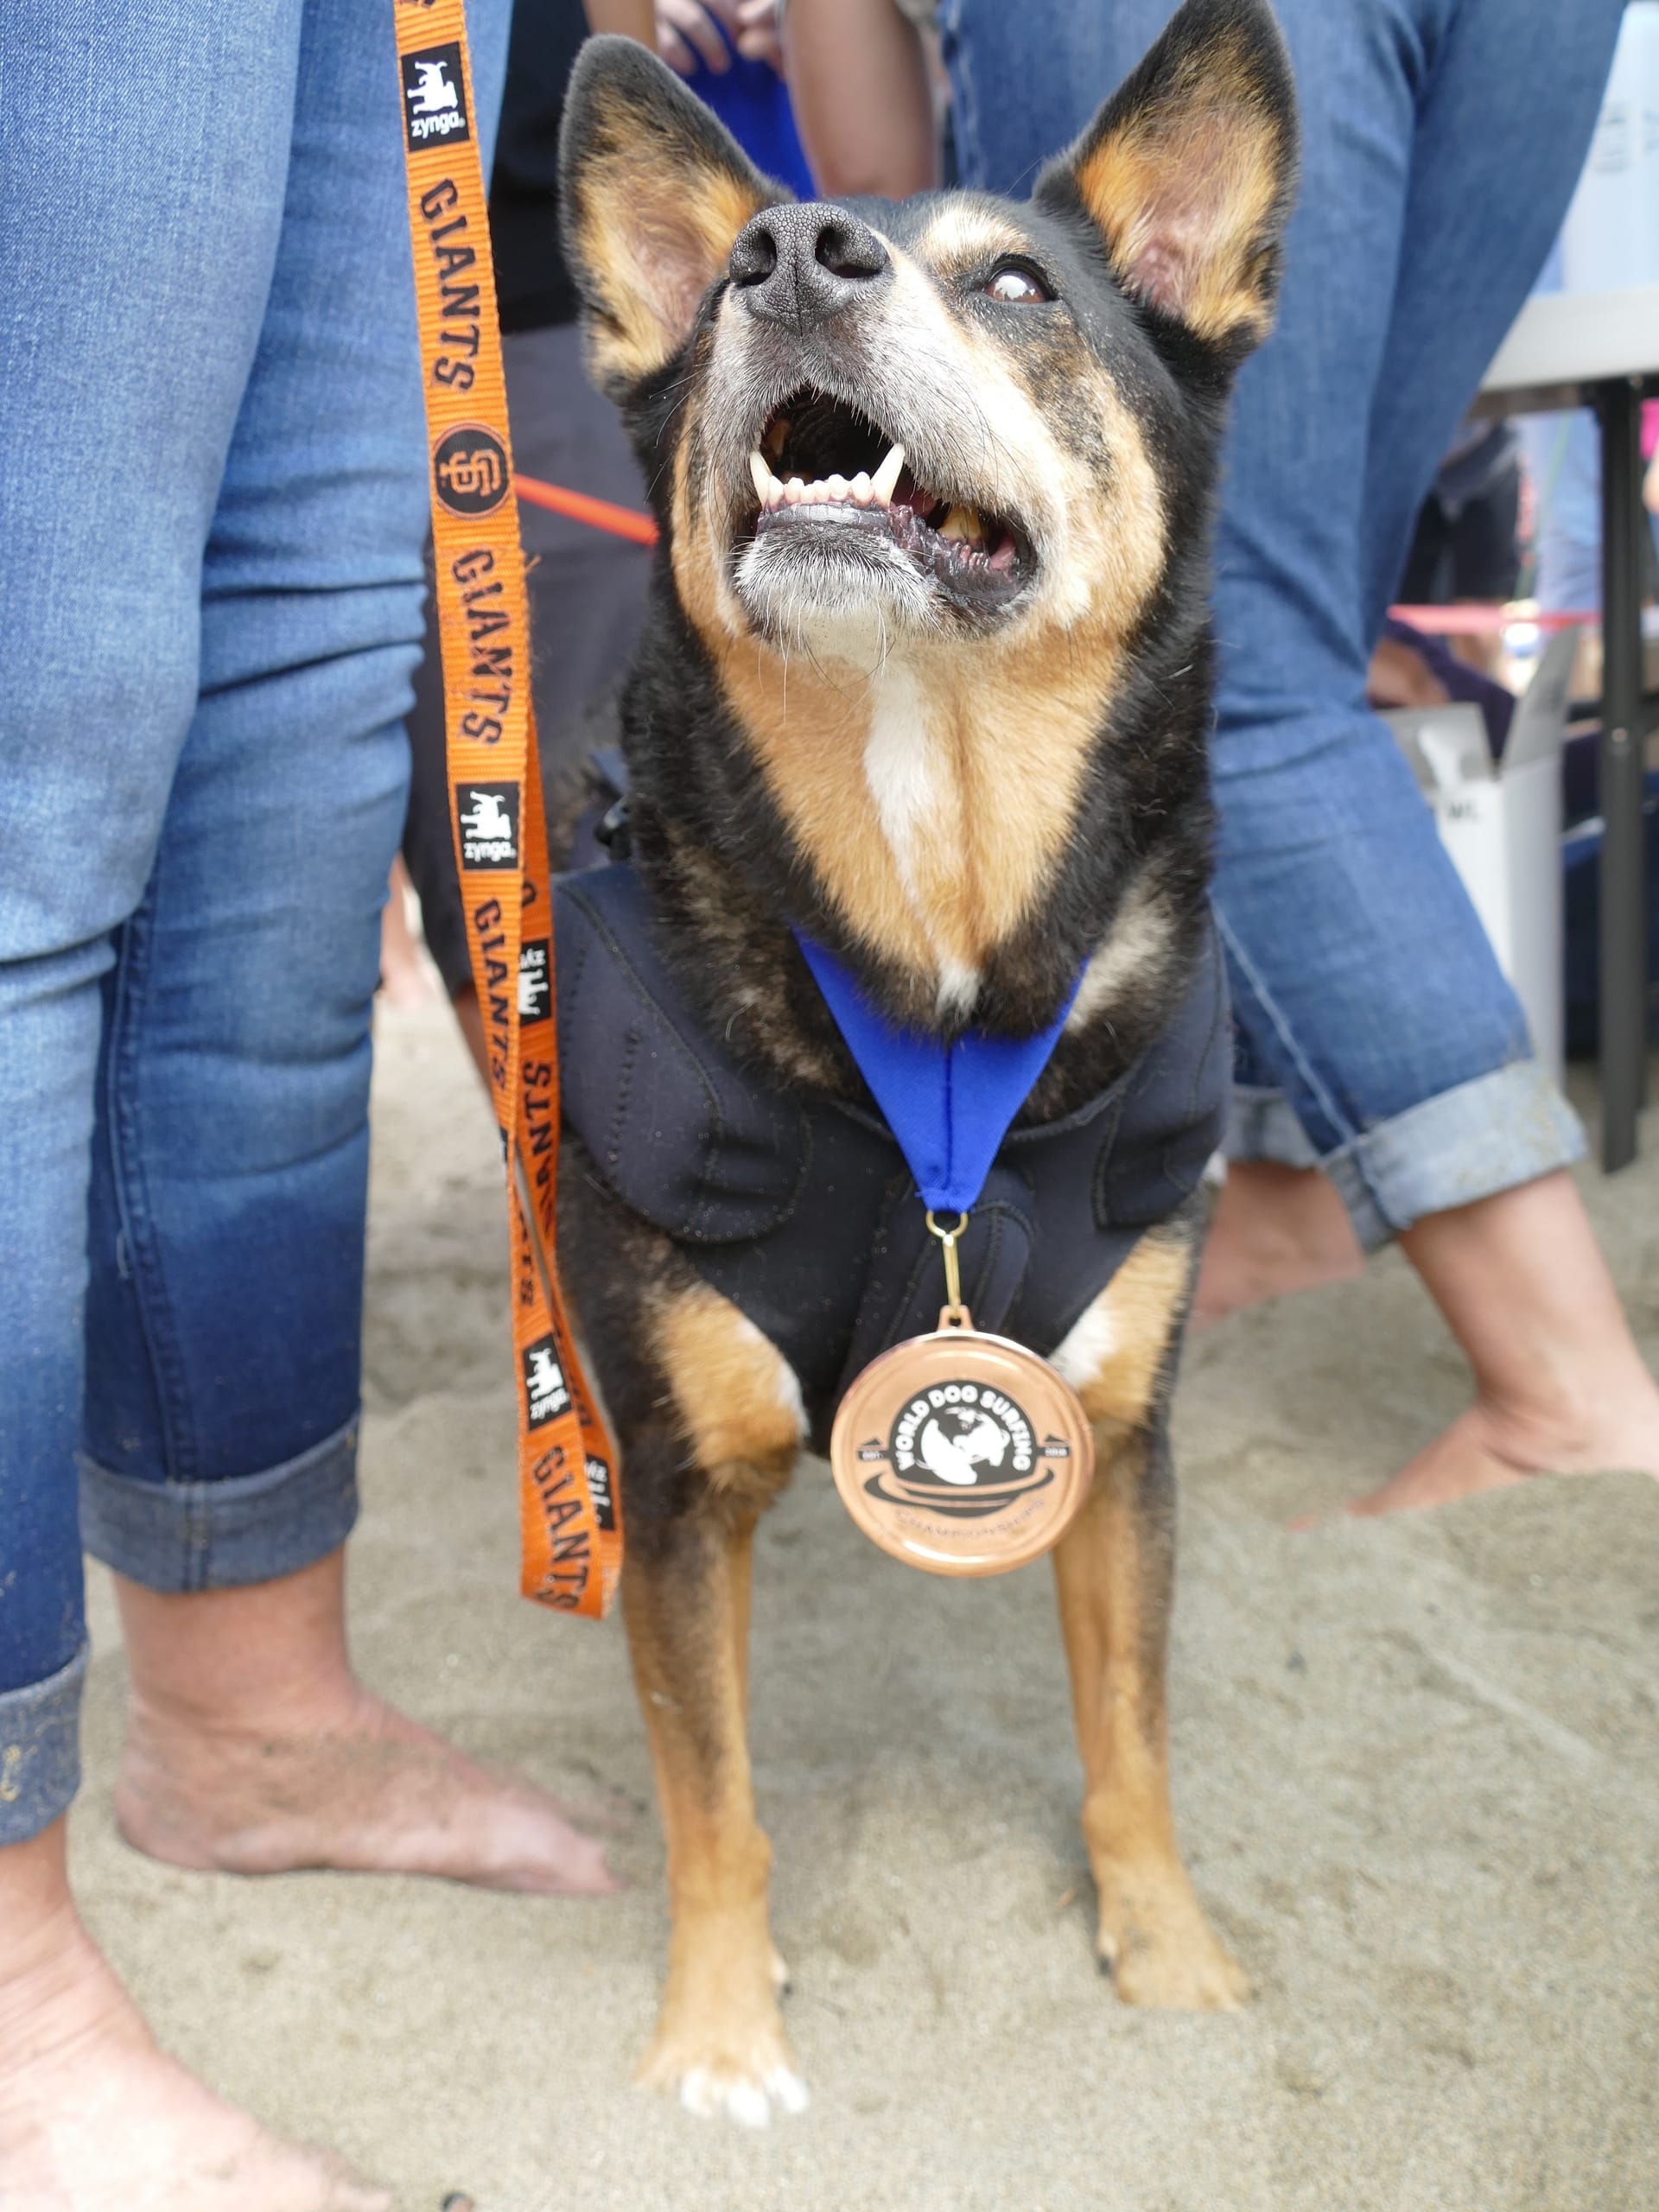 Die in der Hundesurfer-Szene bekannte Hündin "Surfdog Abbie" trägt die Bronze-Medaille in der Kategorie Mittelgrosser Hund: Das Herrchen der Favoritin war durch einen verletzten Zeh nicht in Bestform.